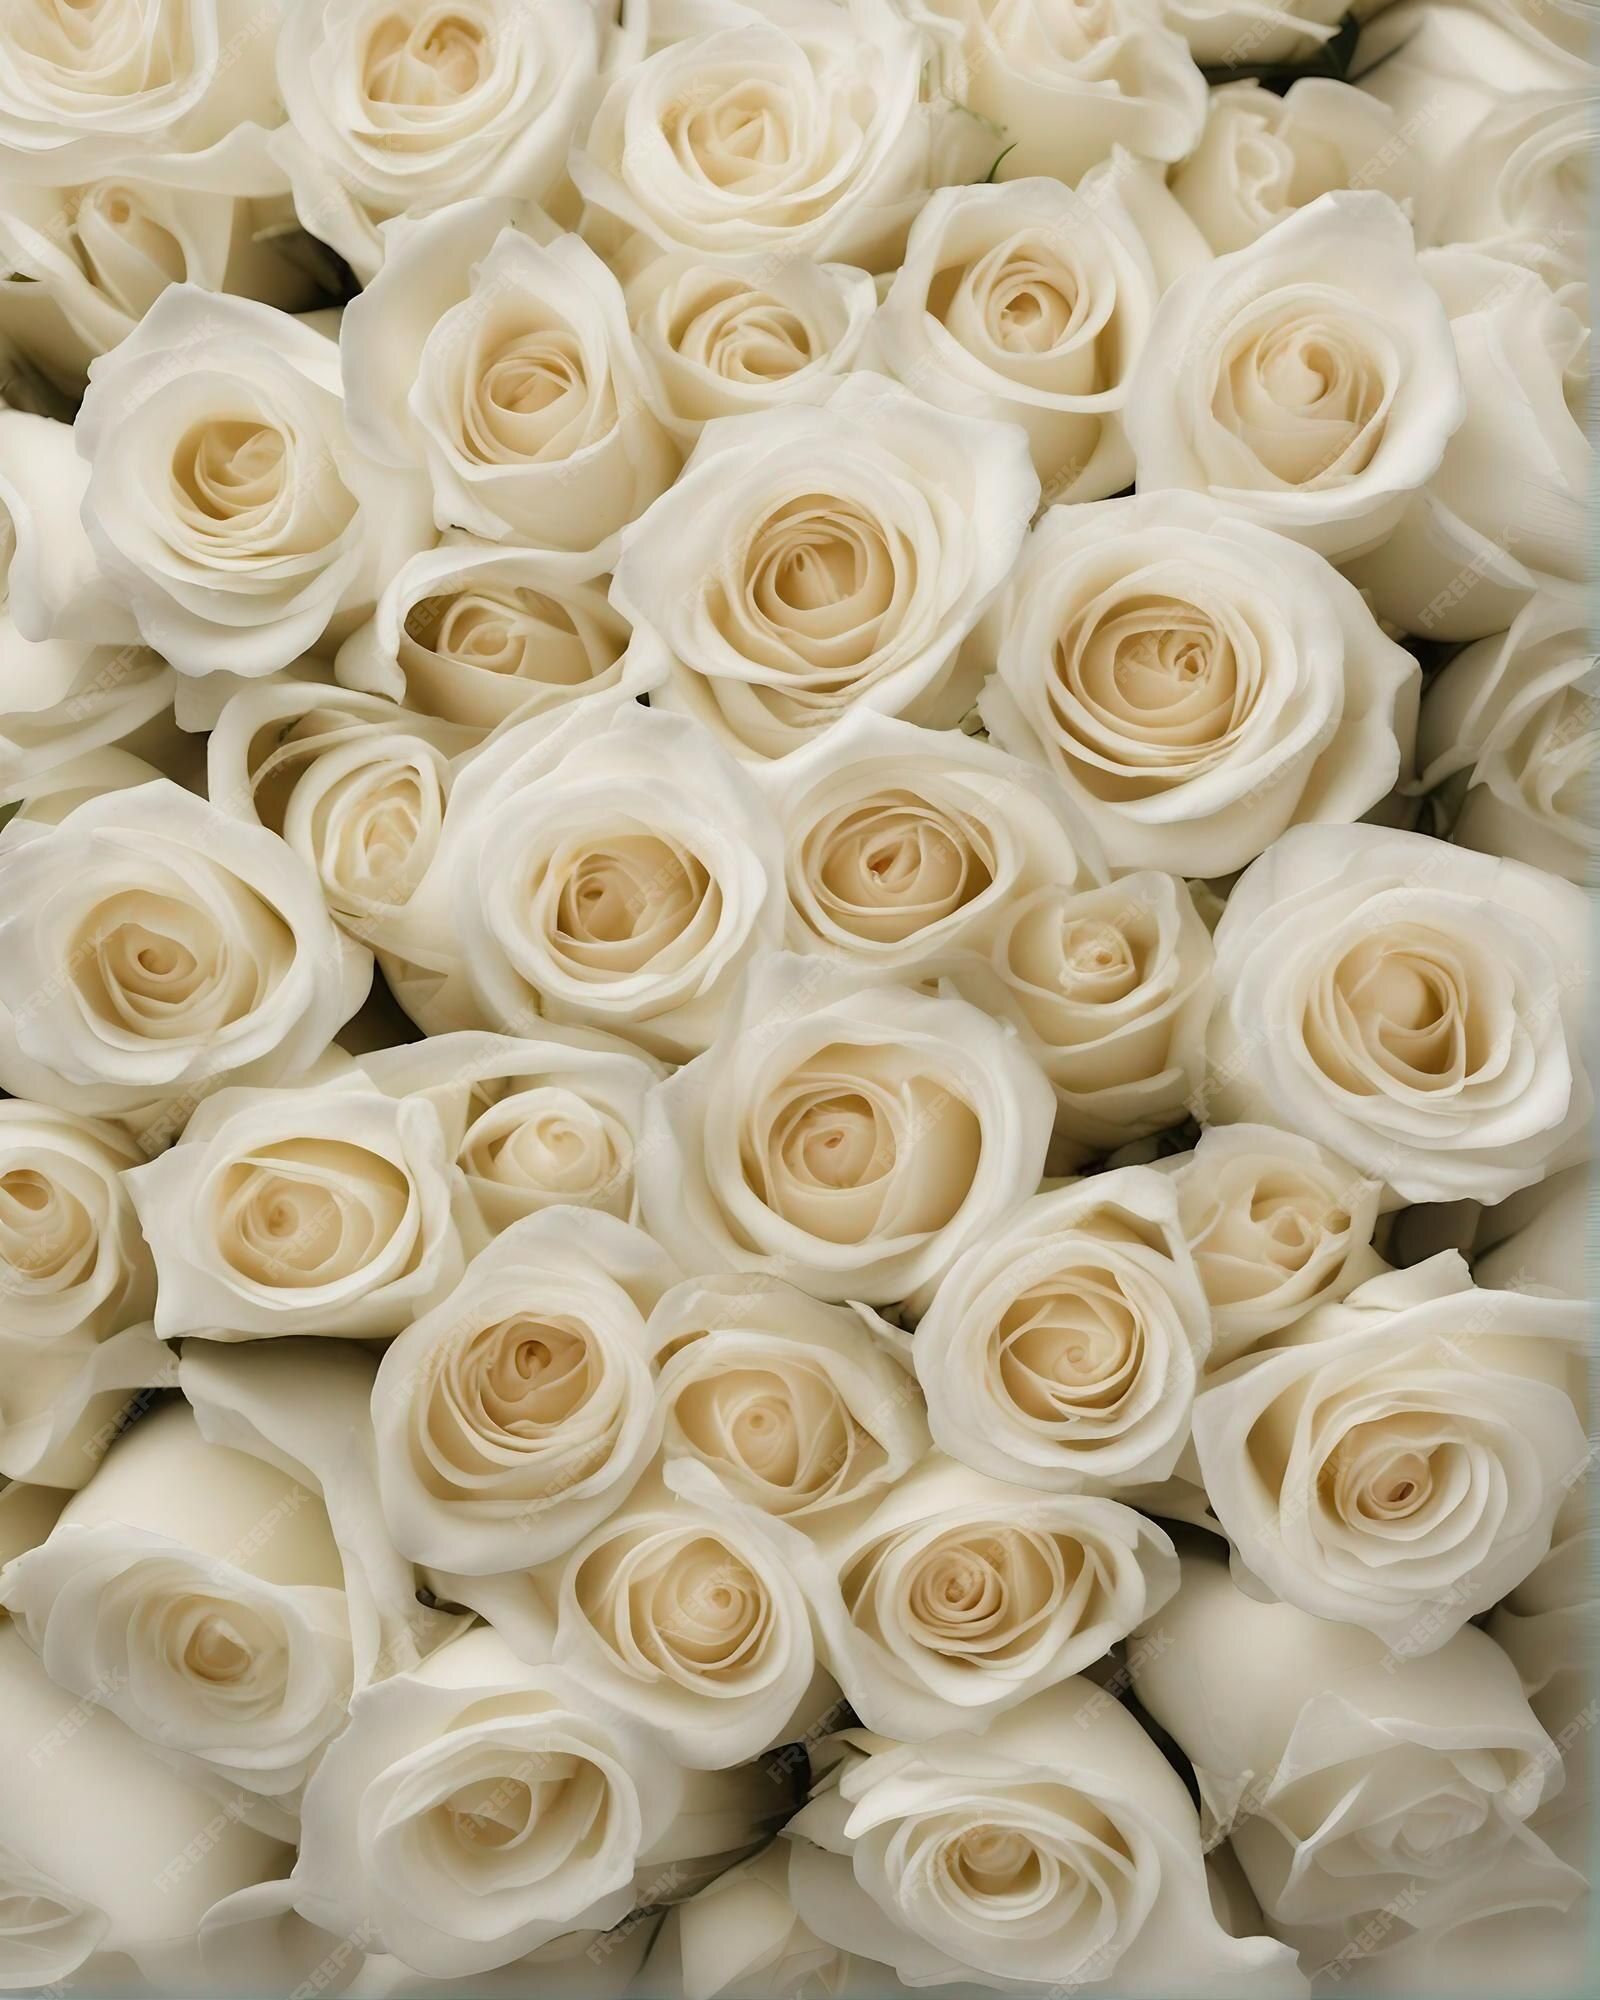  Weiße Rosen Hintergrundbild 1600x2000. Draufsicht mit weißen rosen im hintergrund